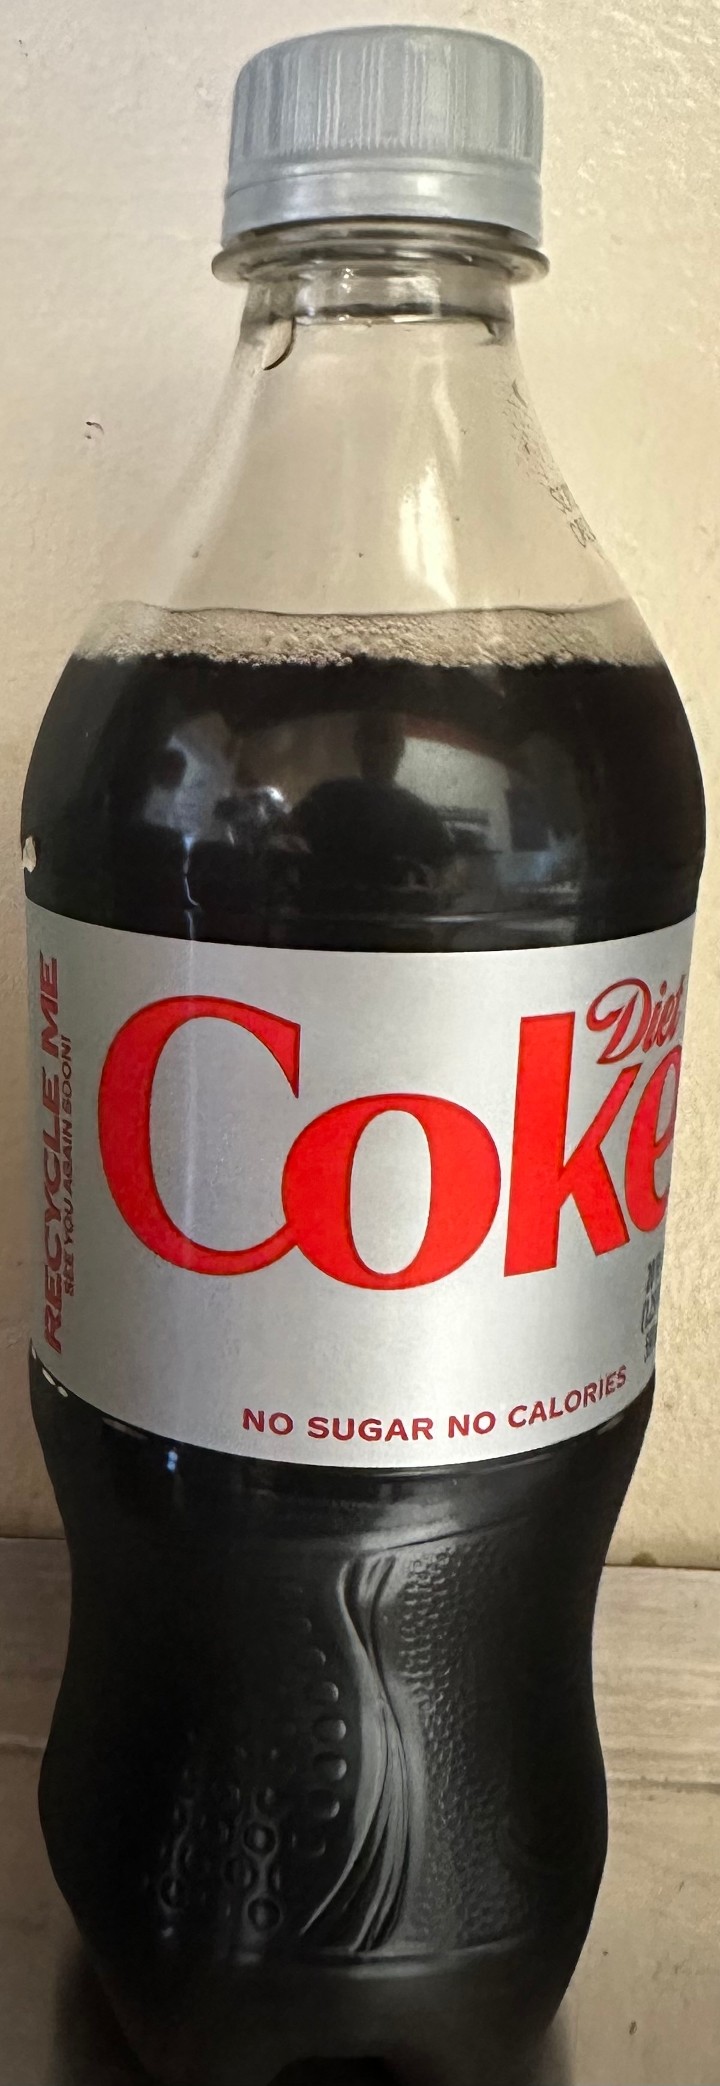 20 oz Diet Coke